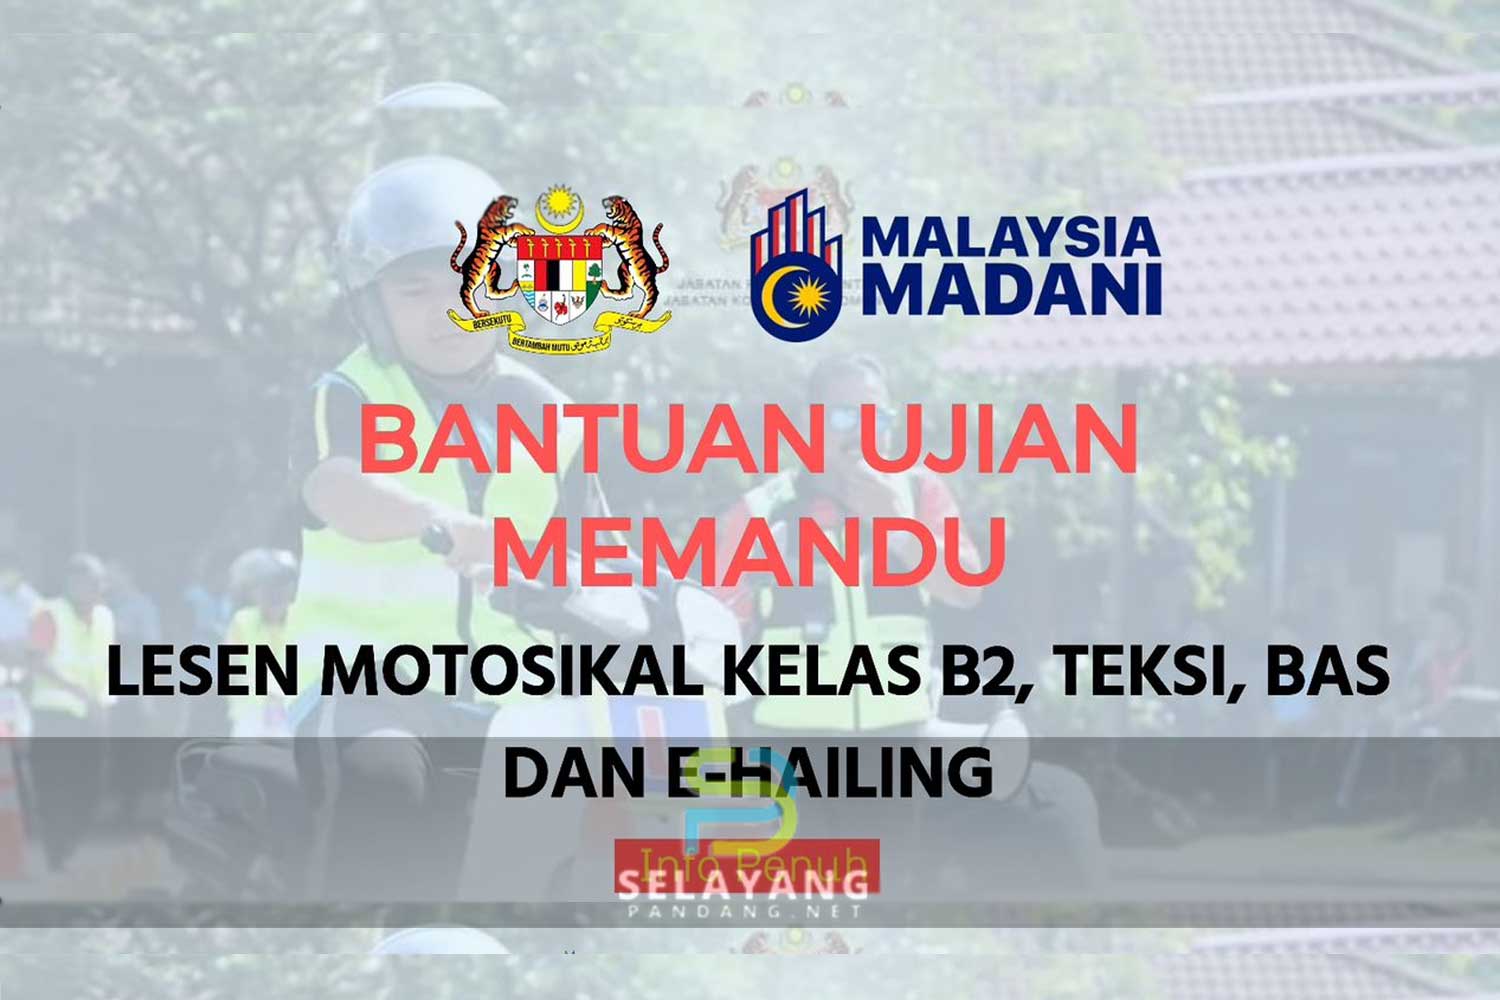 Ujian lesen memandu percuma untuk semua rakyat Malaysia, ini caranya